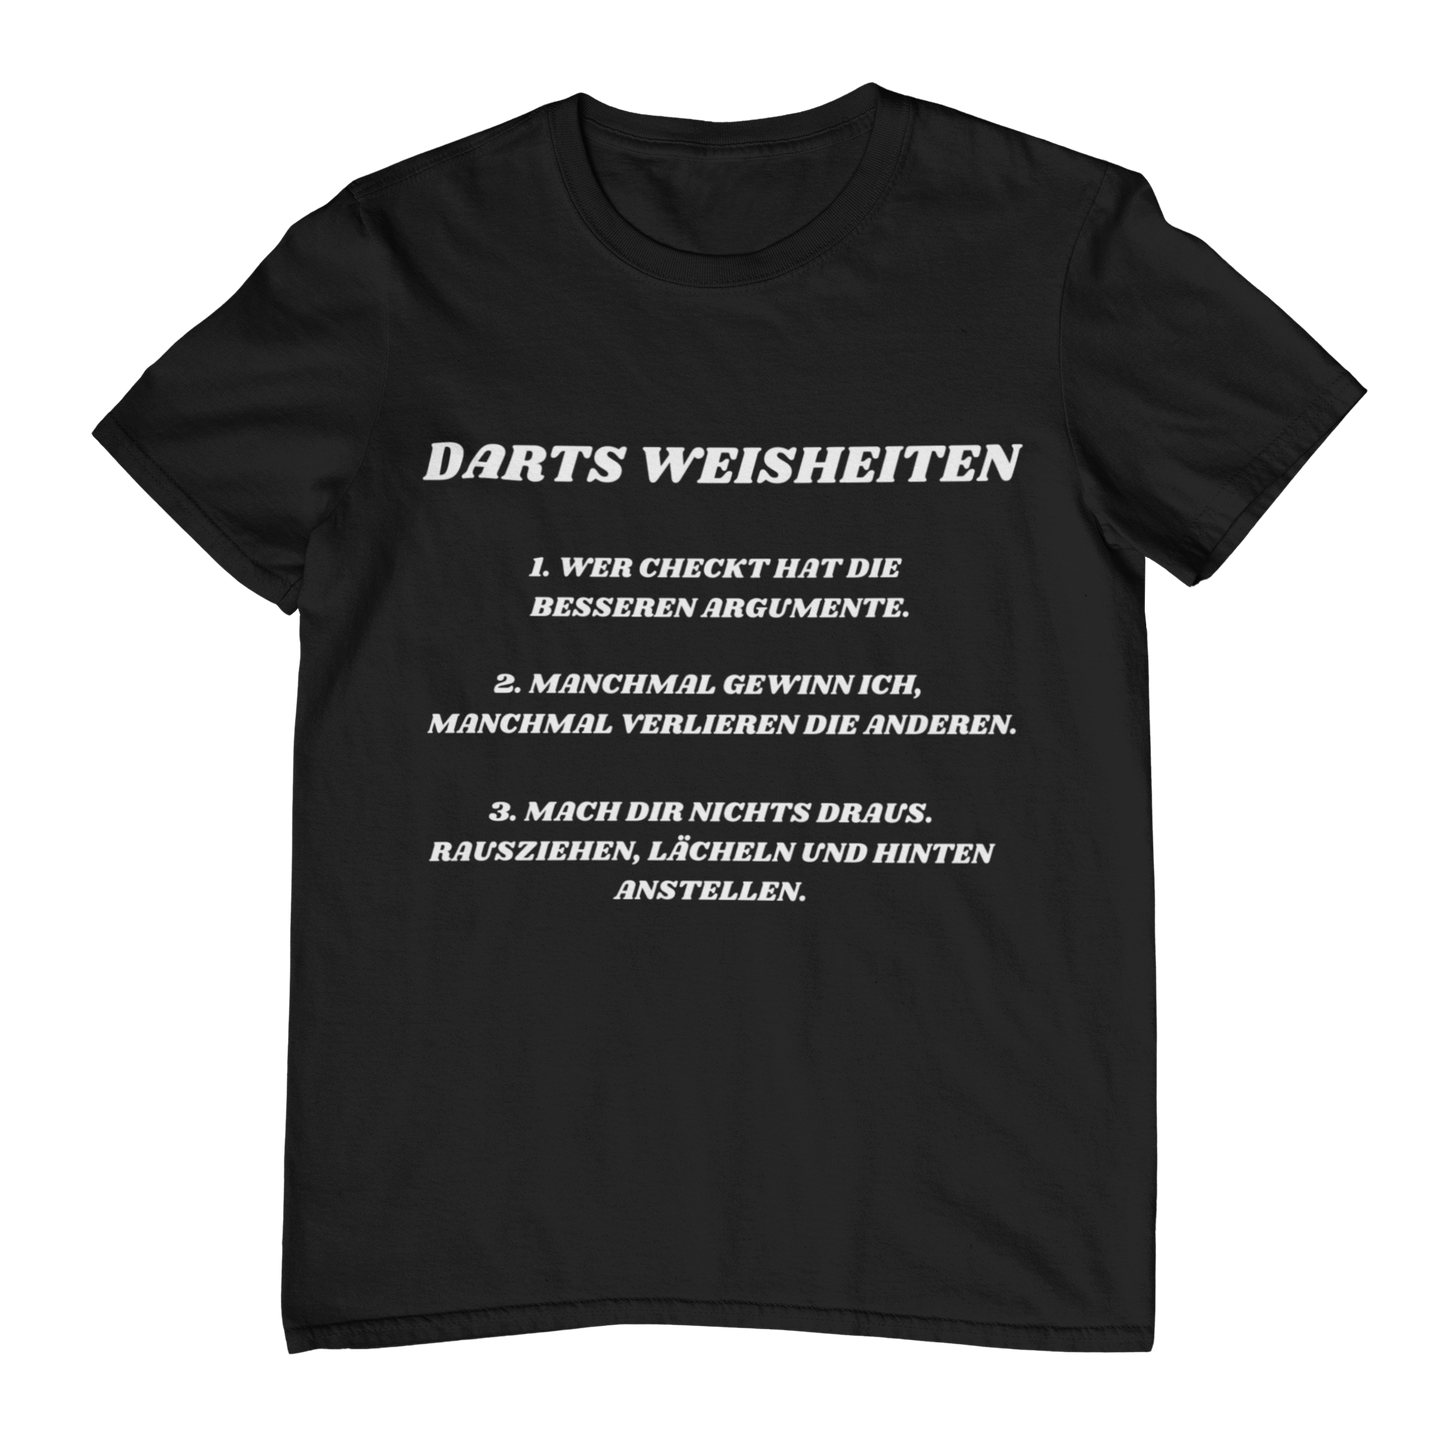 Darts Weisheiten - Shirt